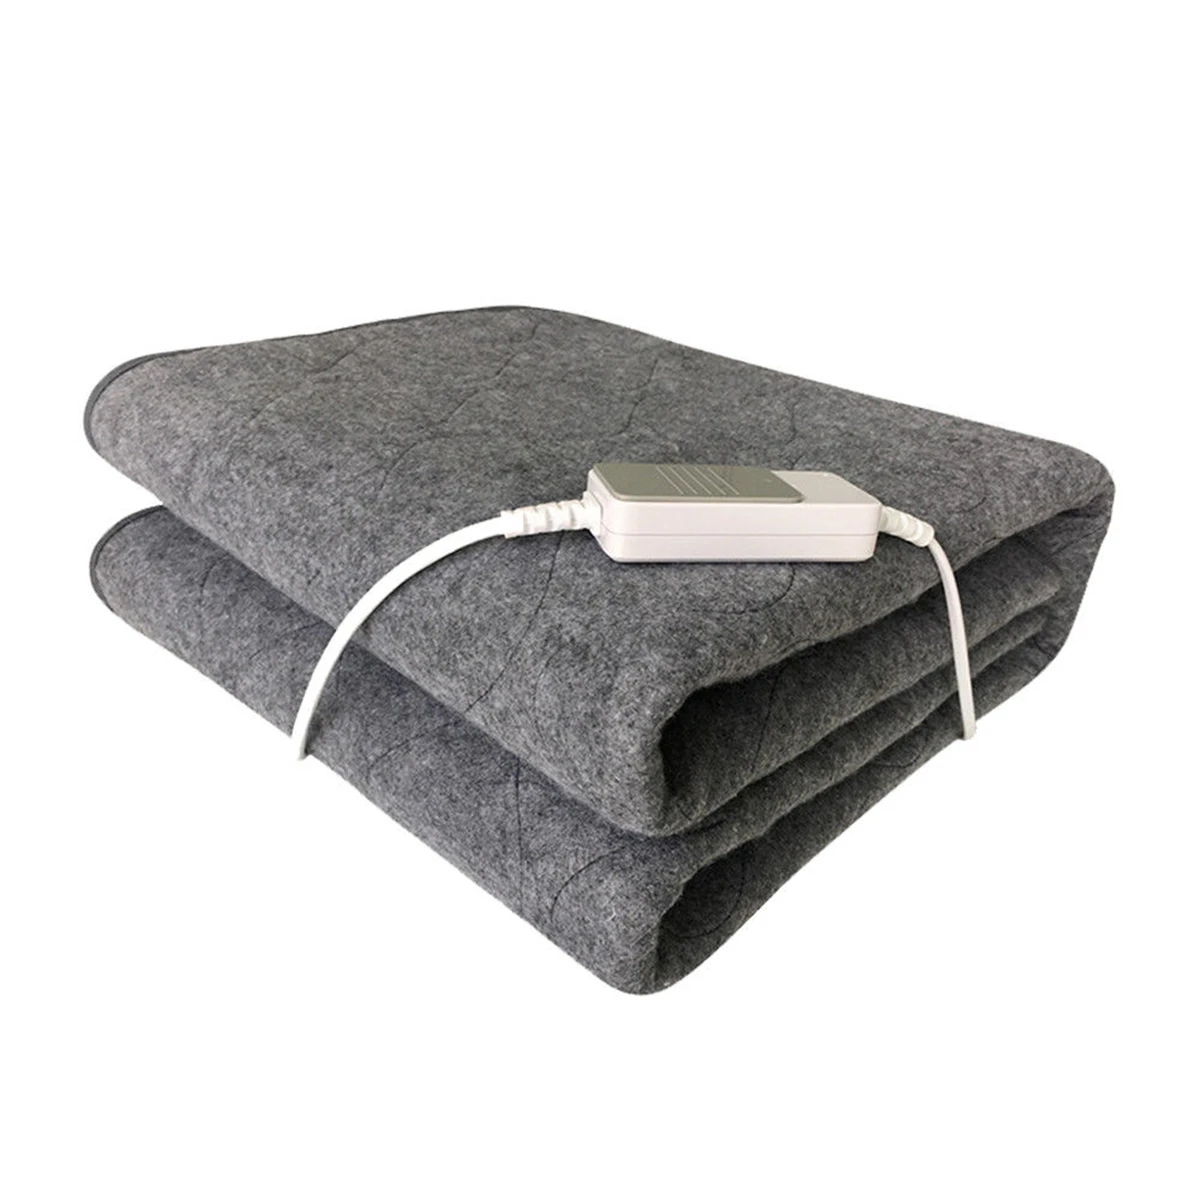 Зимнее электрическое одеяло, теплый коврик с подогревом, покрывало под кровать, матрас из нетканого материала, одеяло, регулируемое, 3 цвета, 150*75 см - Цвет: Серый